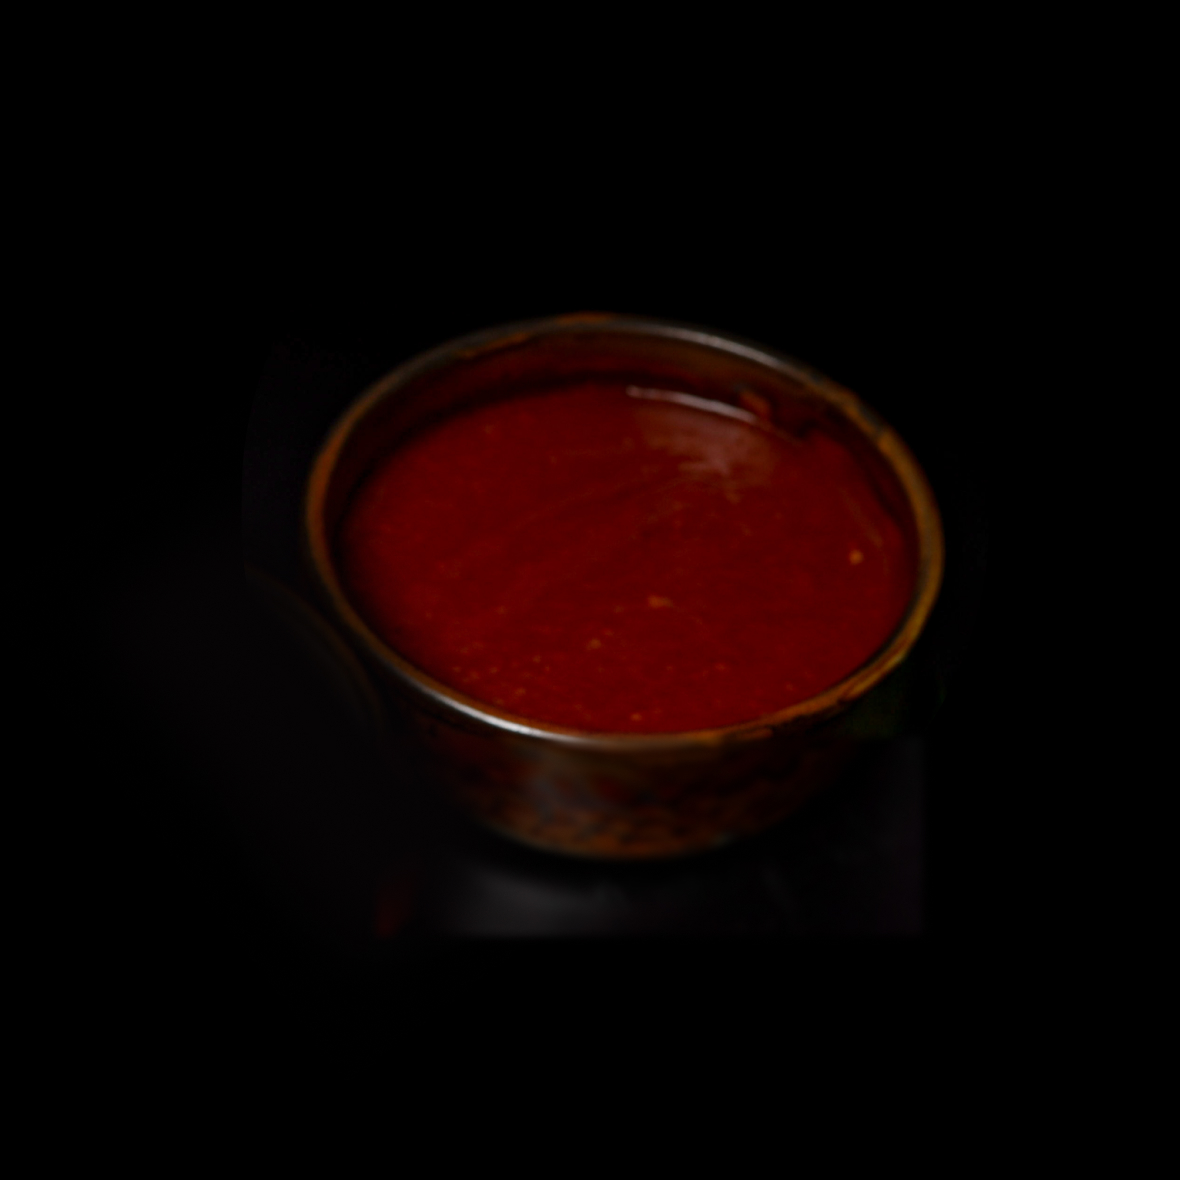 томатный соус купить в пятерочке для пиццы фото 87